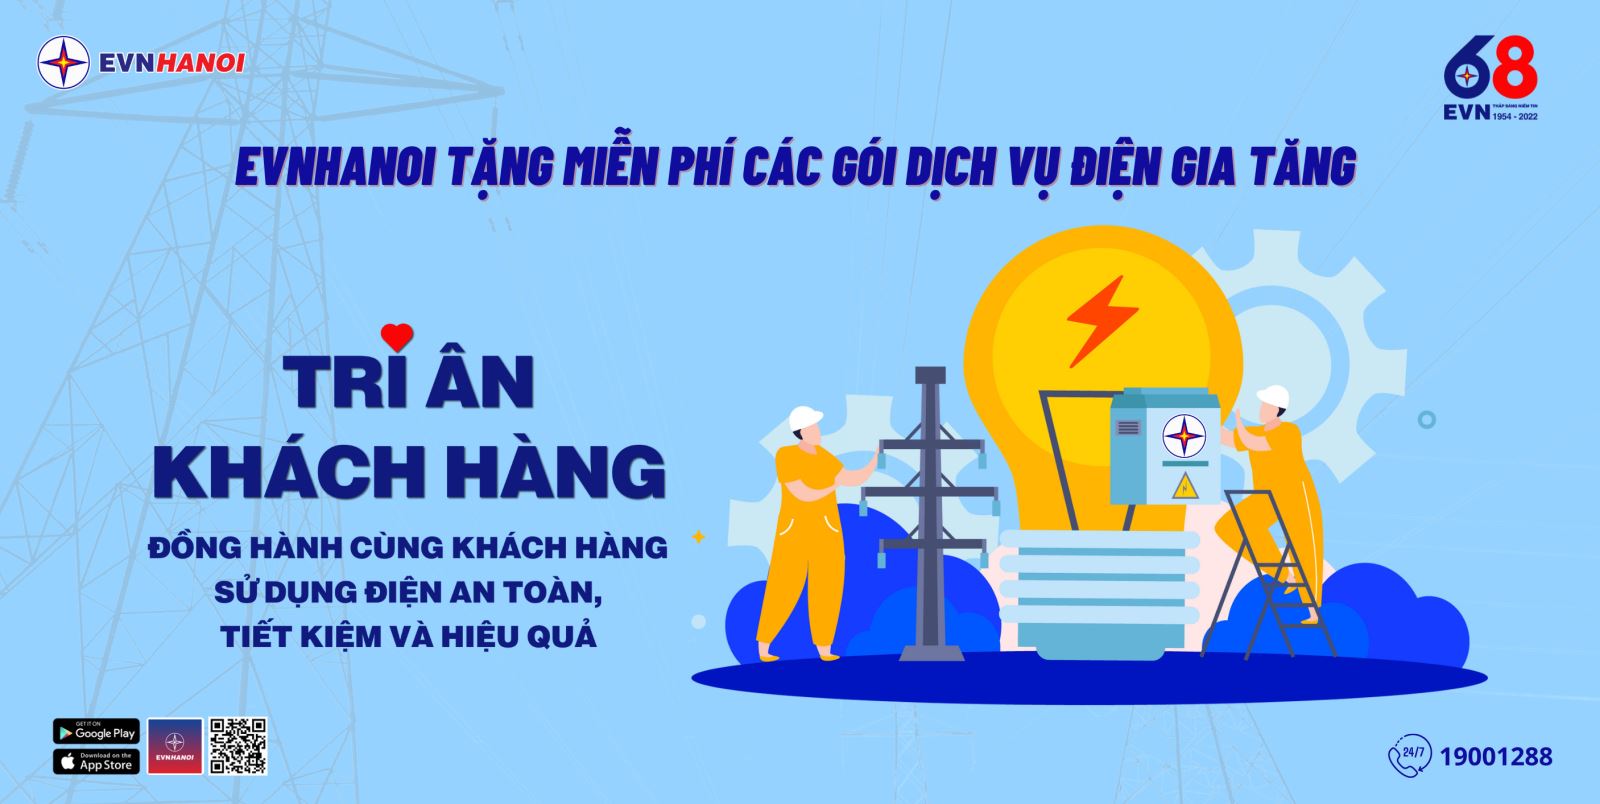 EVNHANOI tặng miễn phí các gói dịch vụ điện gia tăng nhân dịp tháng “Tri ân khách hàng năm 2022”.